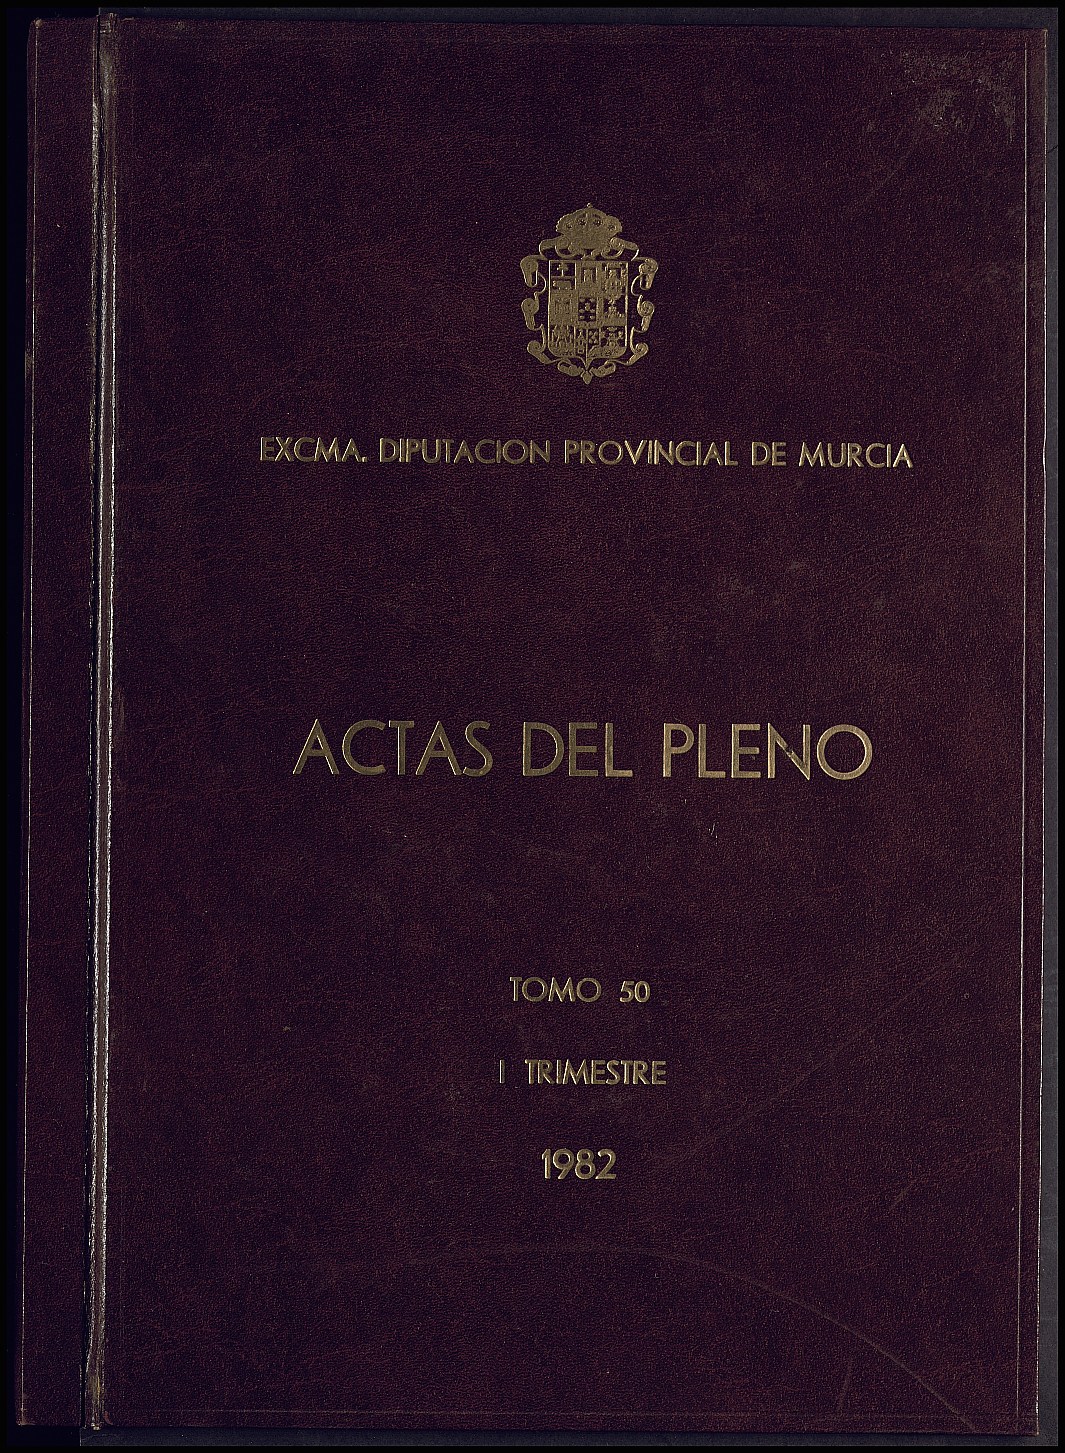 Registro de actas de sesiones del Pleno de la Diputación Provincial de Murcia. Año 1982.